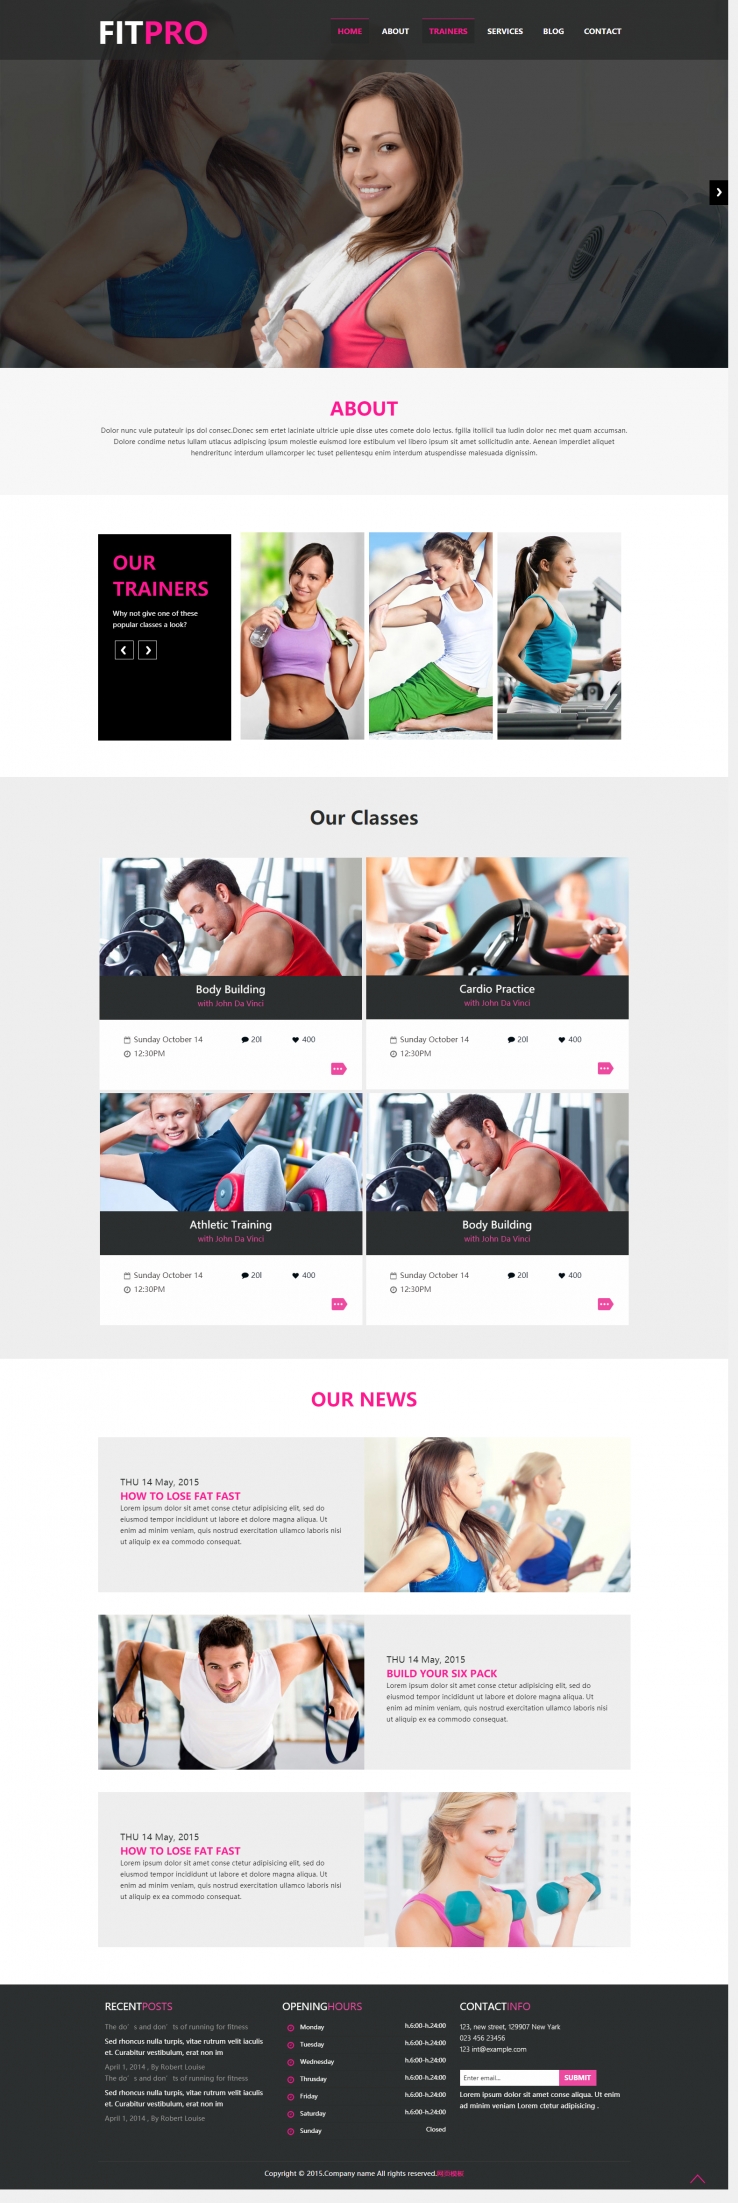 黑色扁平化风格的青春活力健身网站模板下载